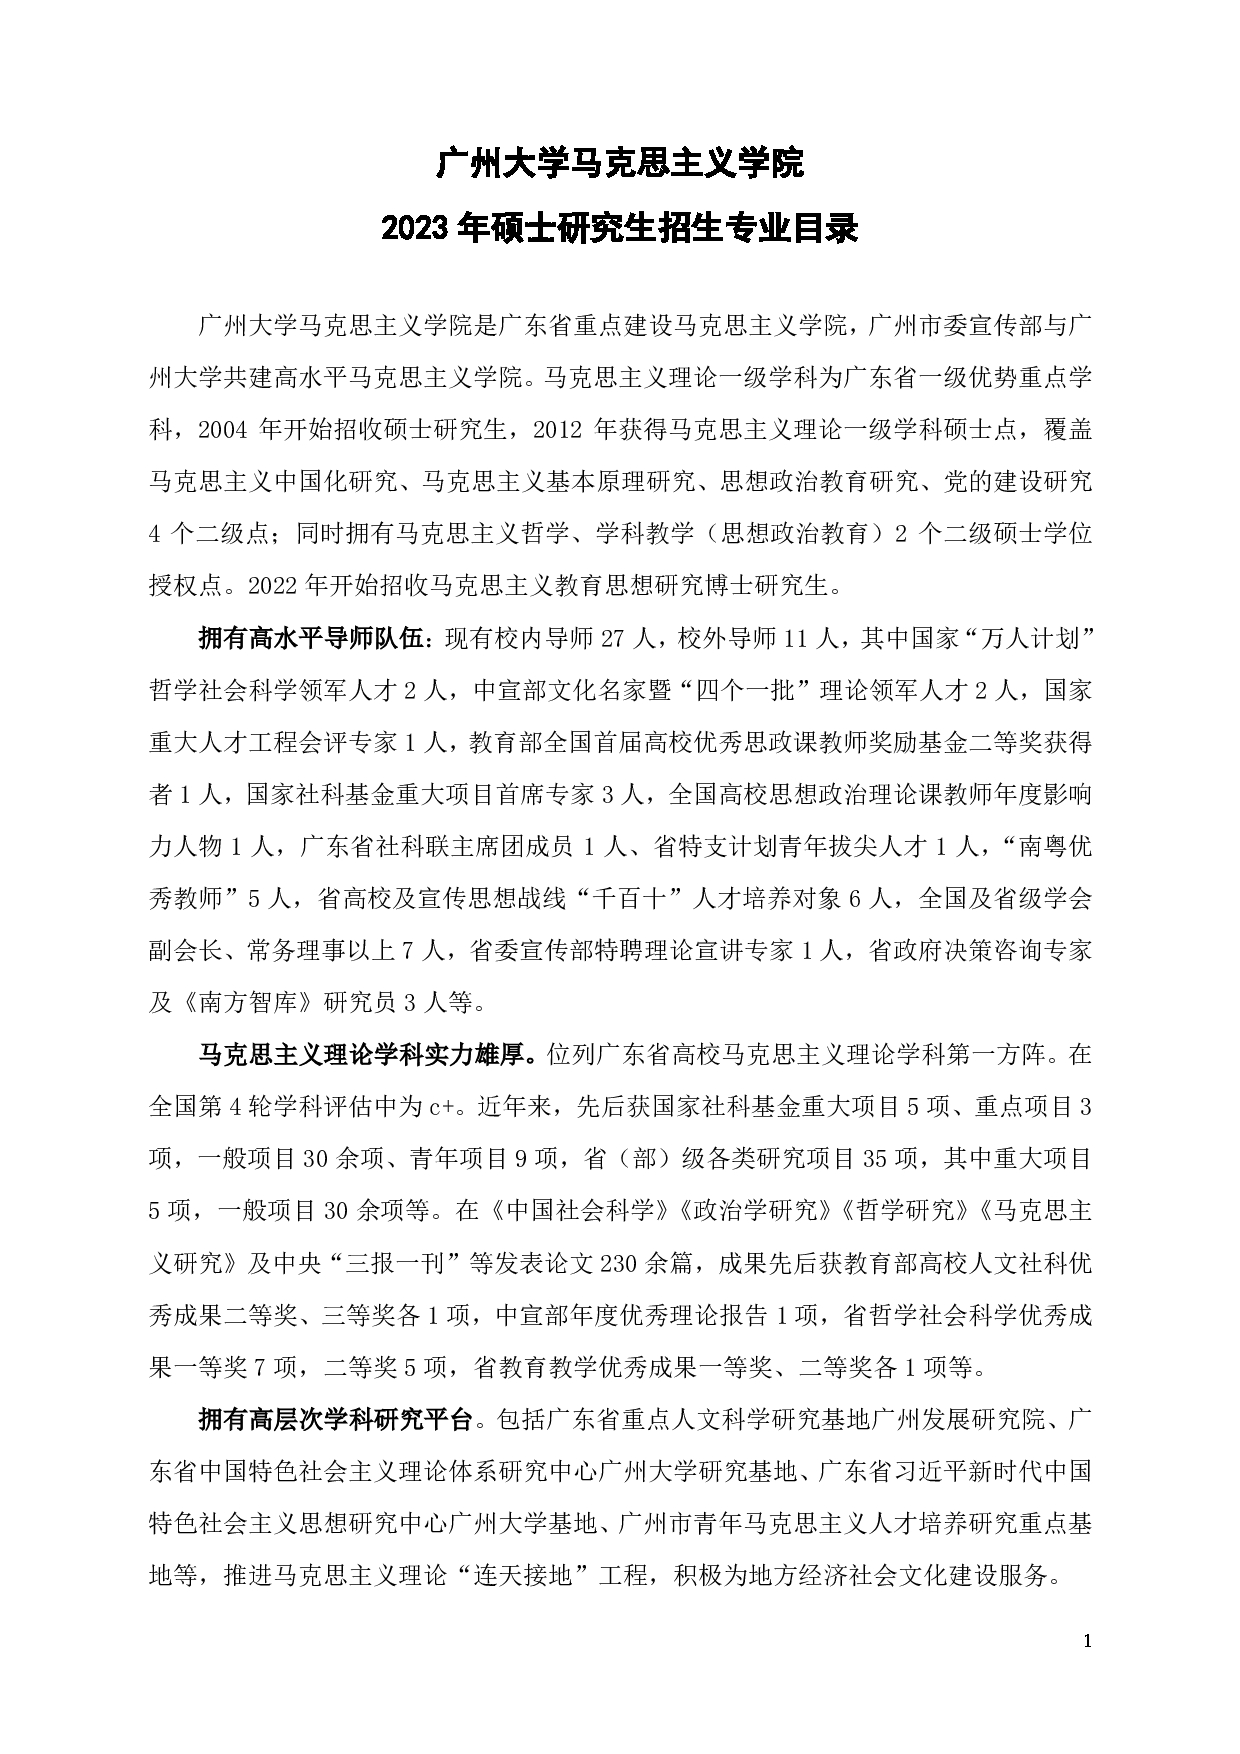 2023招生目录：广州大学2023年  3马克思主义学院 研究生考试招生目录第1页